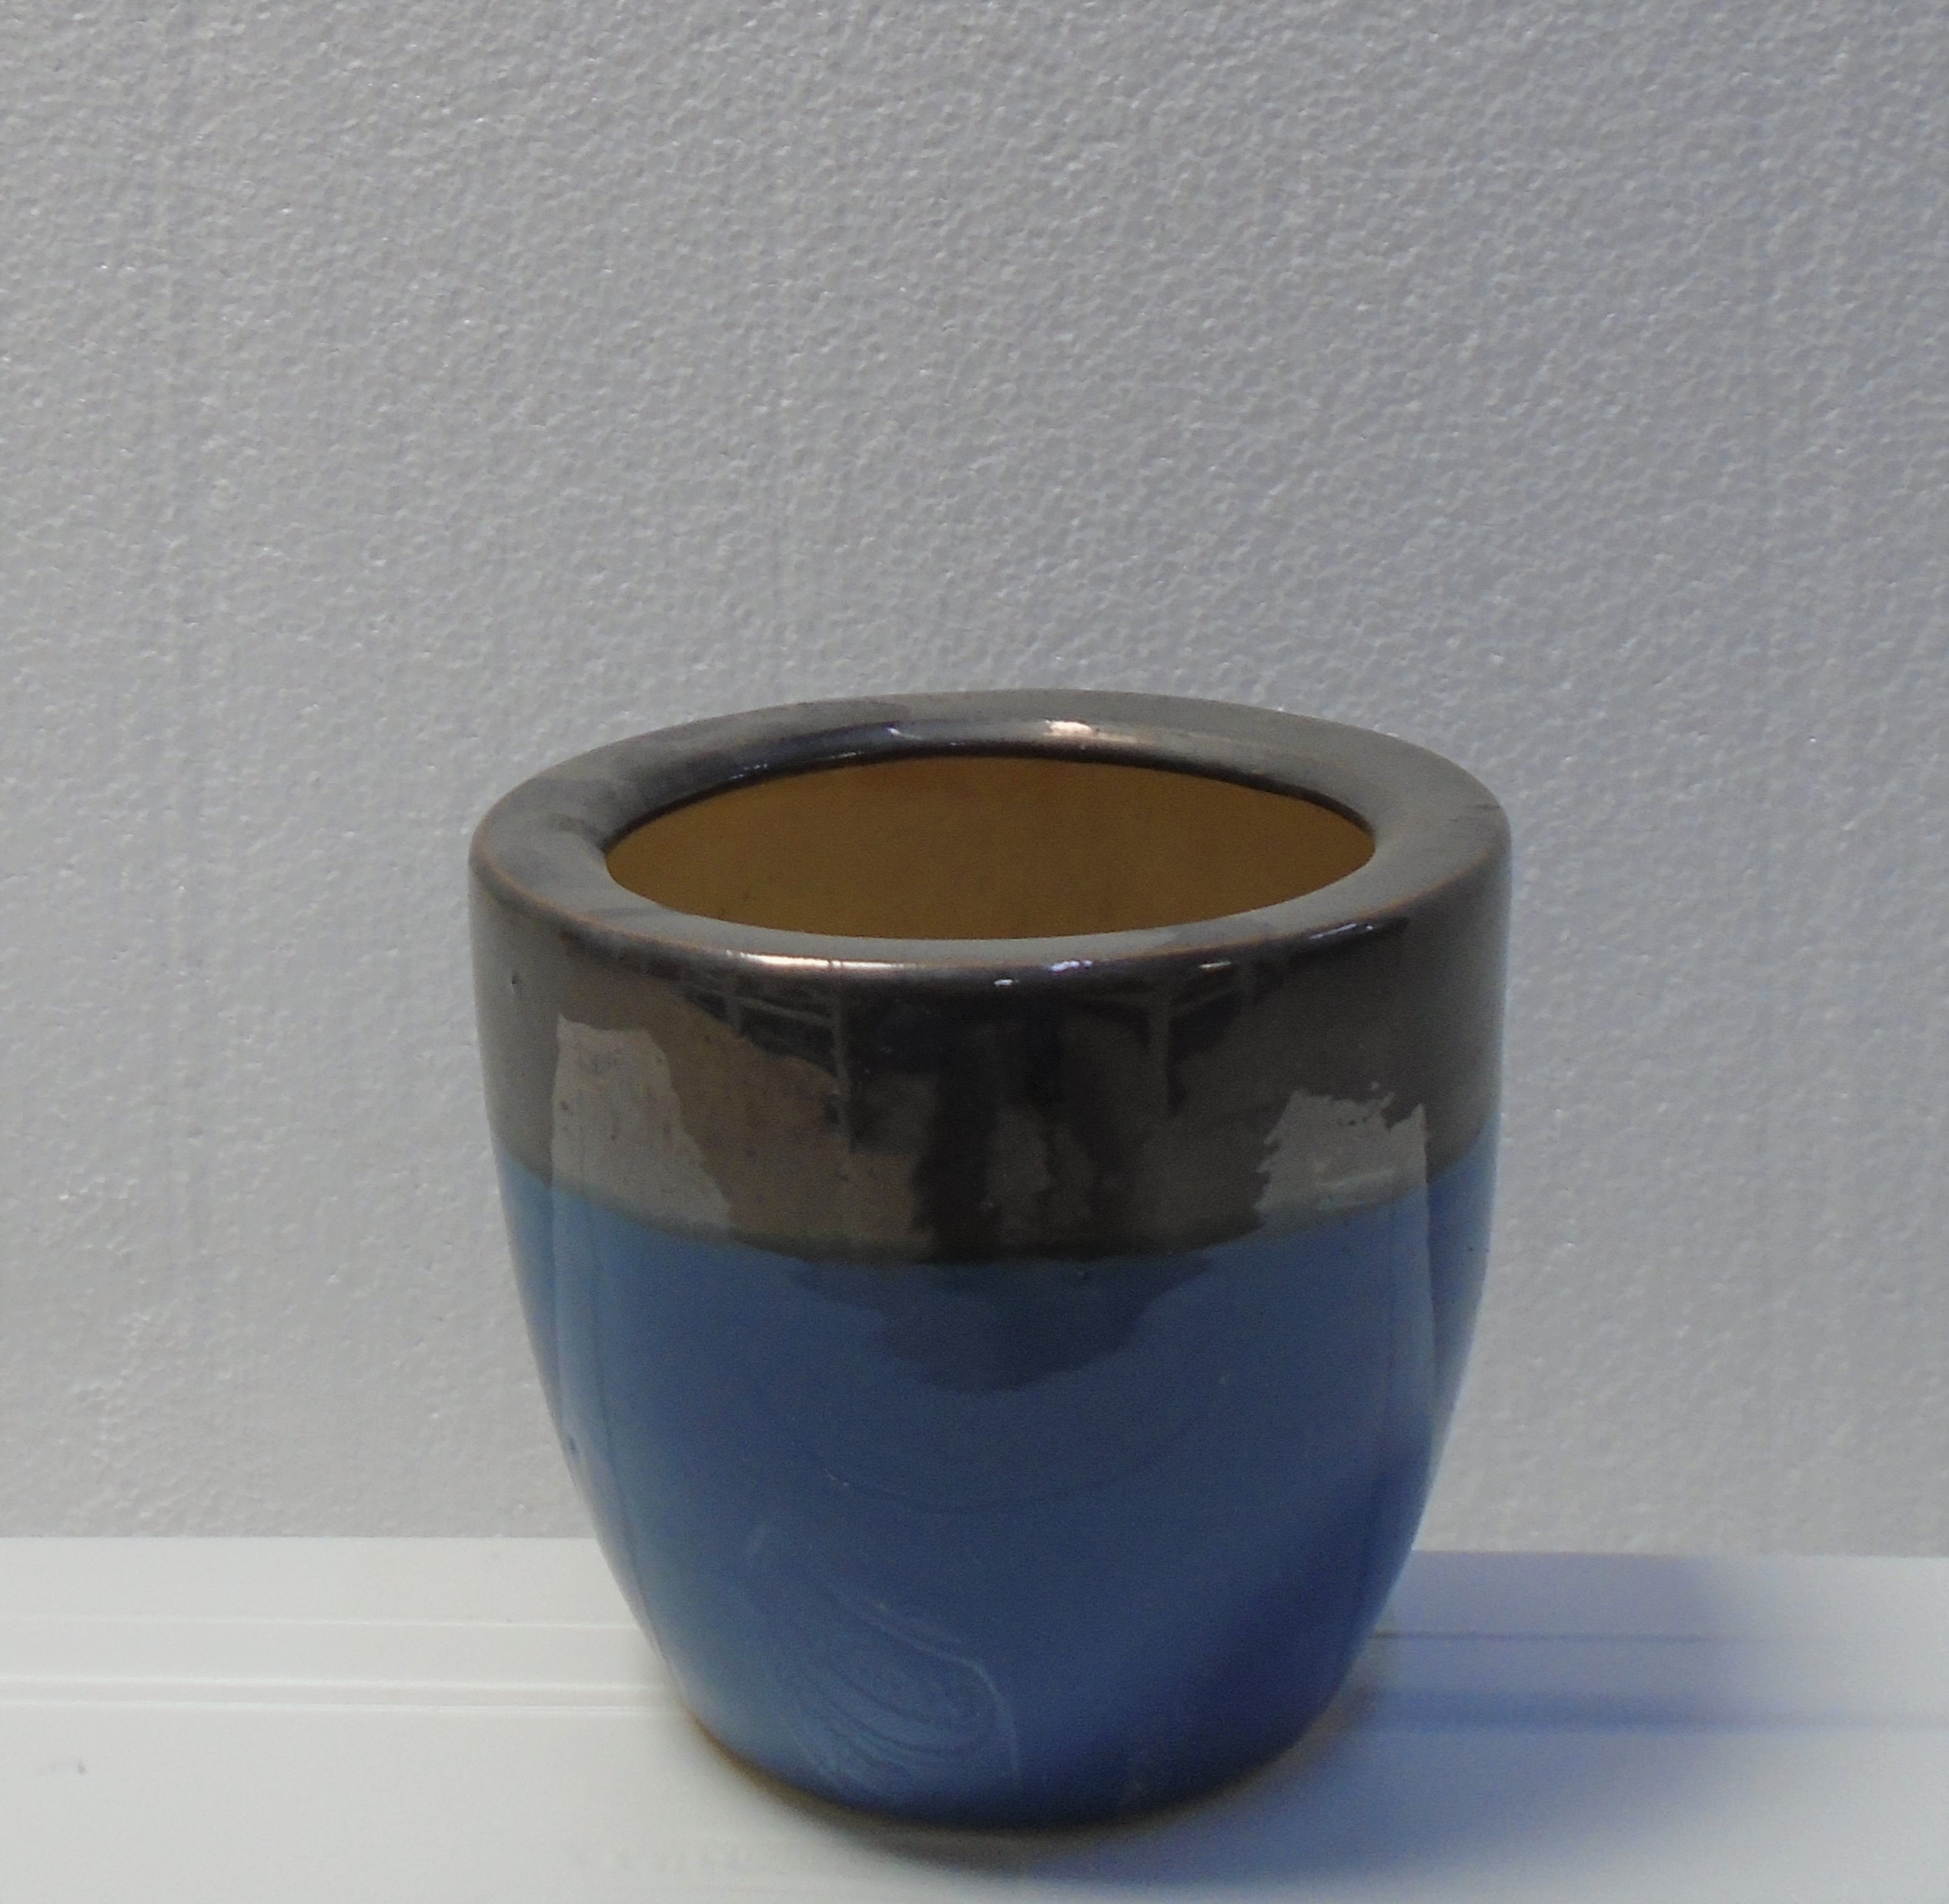 Buy Ceramic Coated Clay Pots Online on Qetaat.com